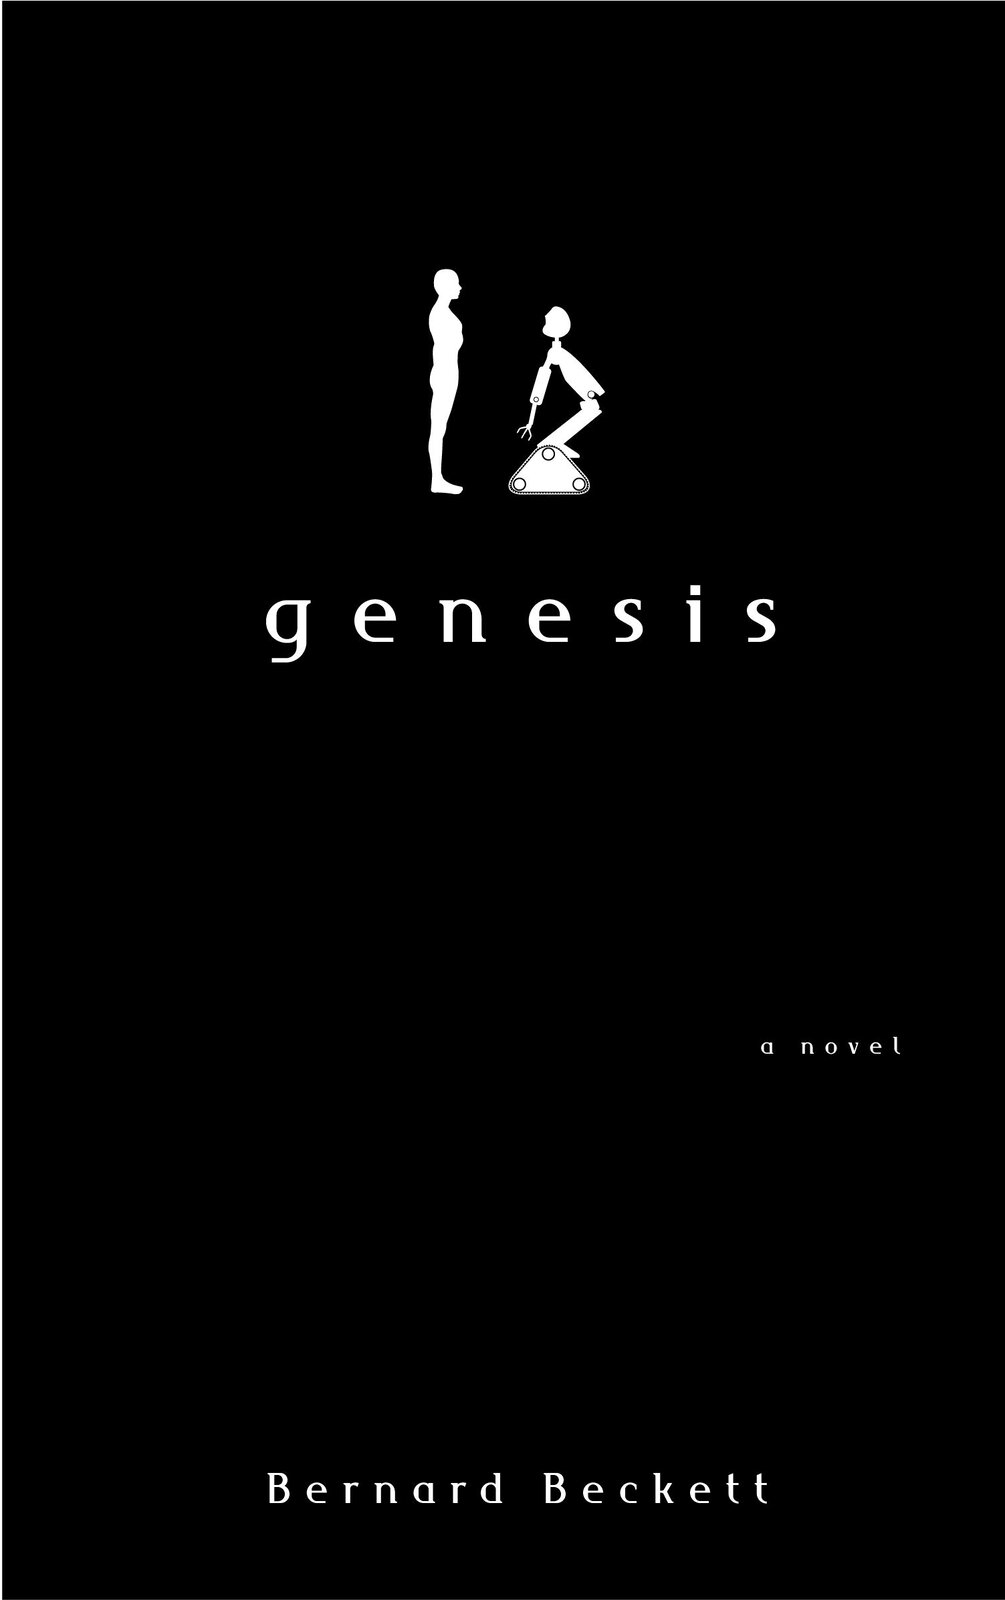 Fotografia okładki książki. Na czarnym tle biały kształt stojącego na baczność mężczyzny ukazany z profilu. Naprzeciw niego stoi robot kształtem przypominający człowieka. Poniżej znajduje się się biały napis "Genesis powieść Bernard Beckett".